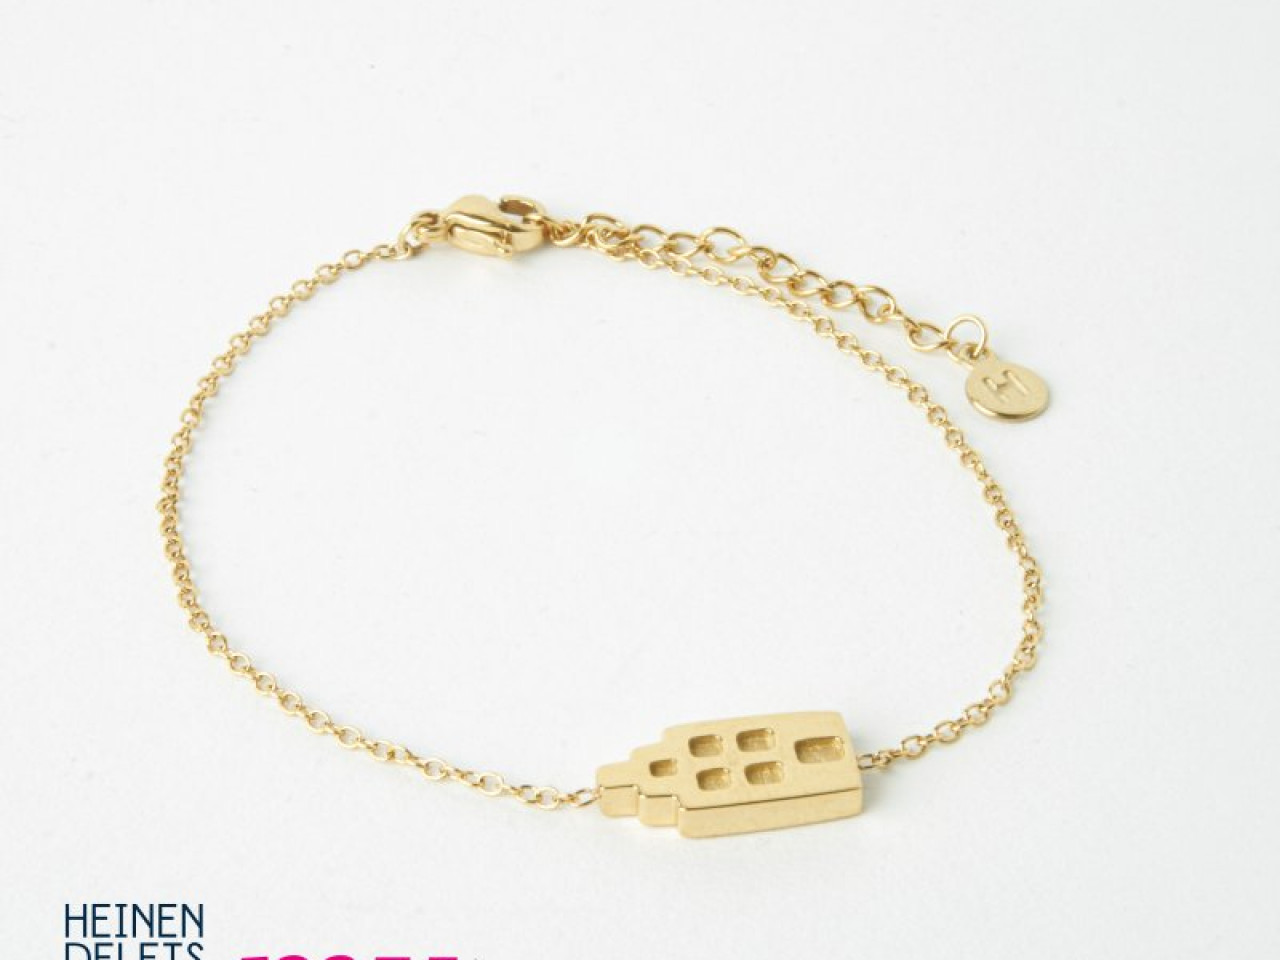 Armband Amsterdams huisje goud sieraden van My Jewellery voor Heinen Delfts Blauw